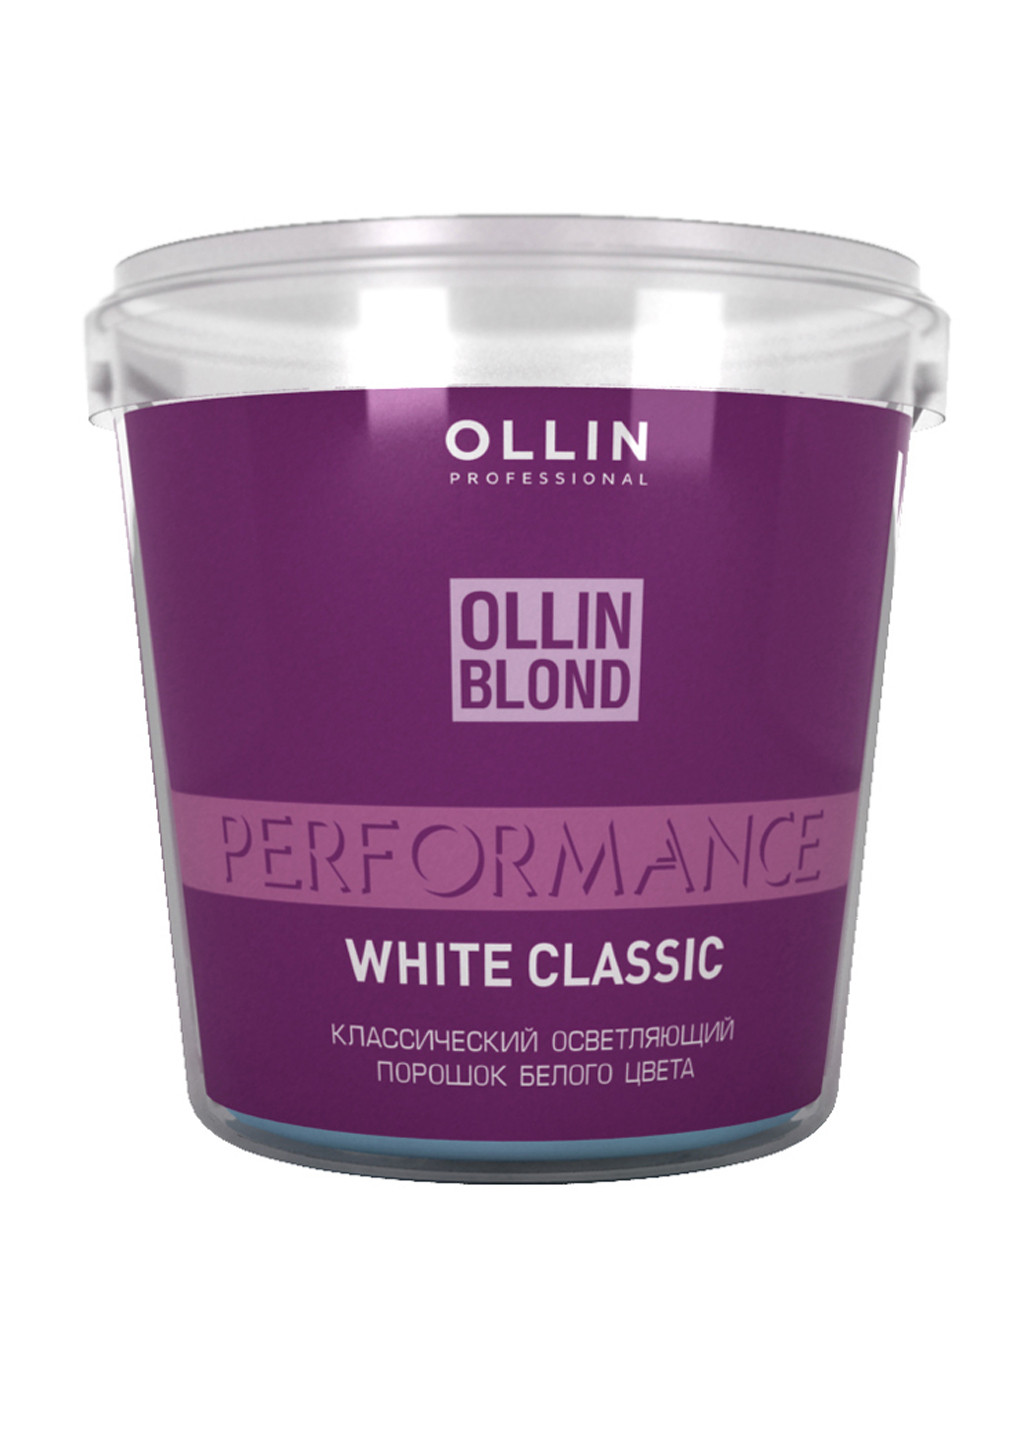 Осветляющий порошок белого цвета, 500 г Ollin Professional (160741872)